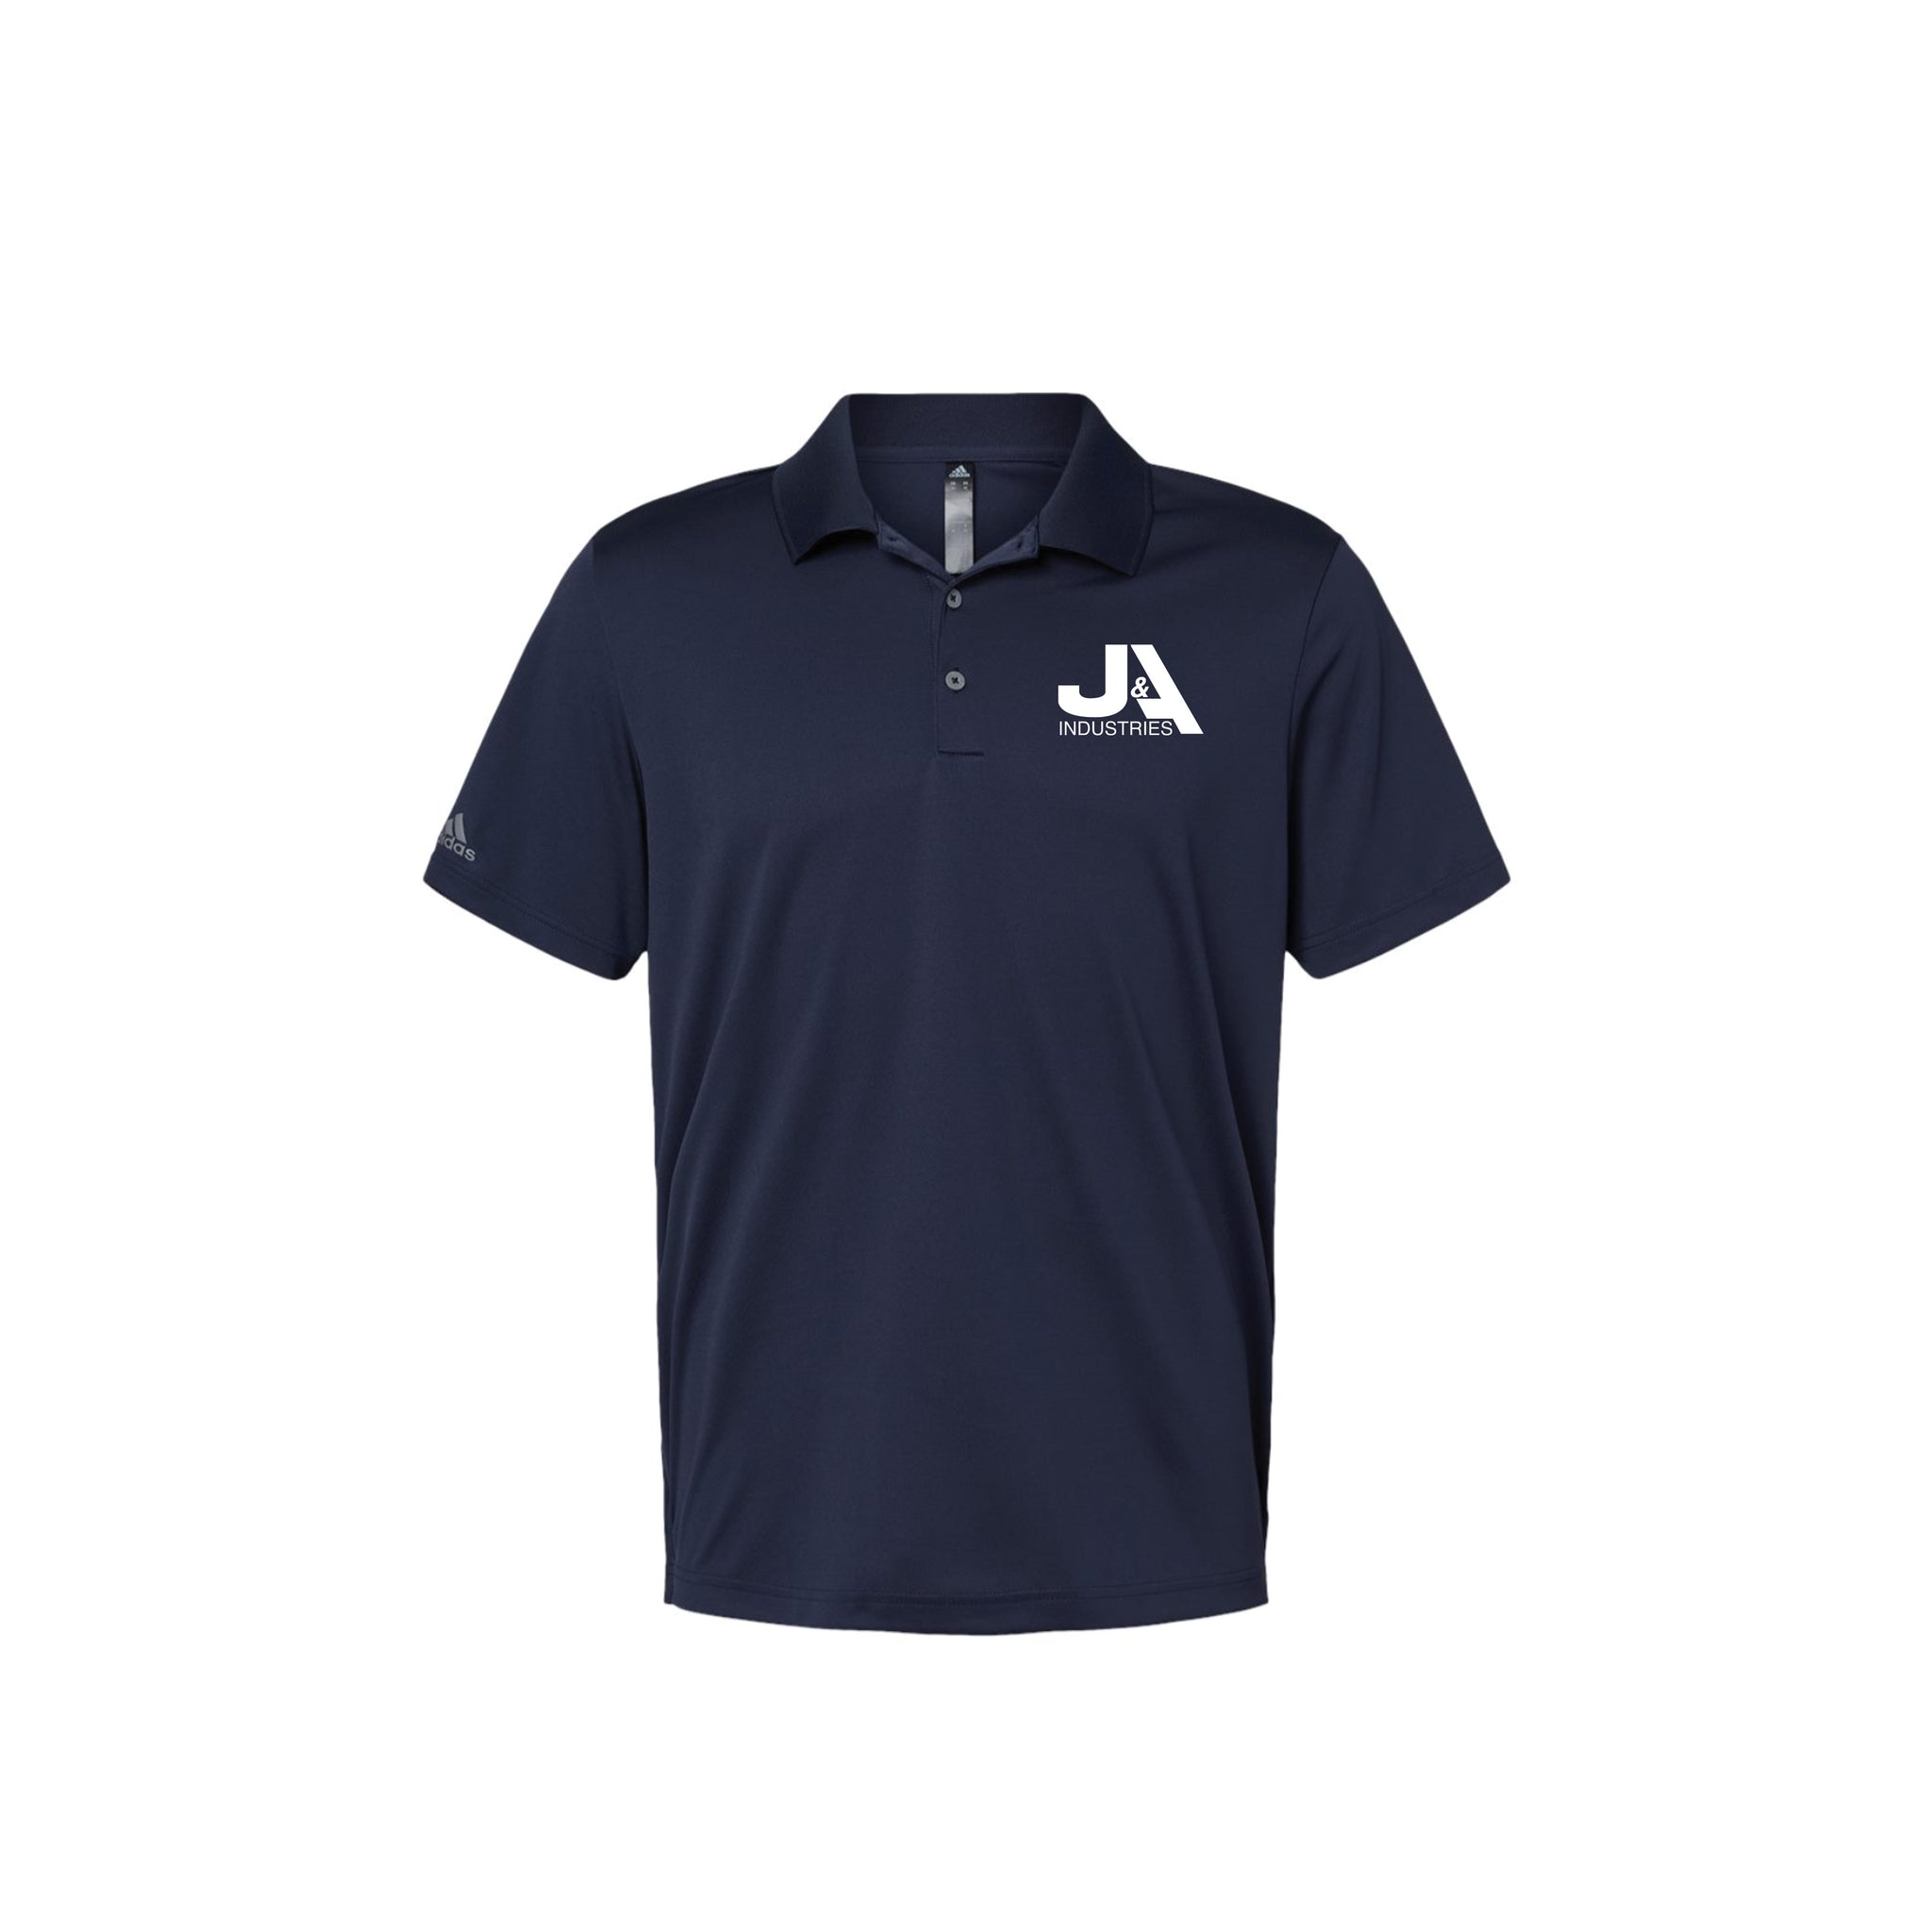 Adidas - Performance Sport Shirt. A230.